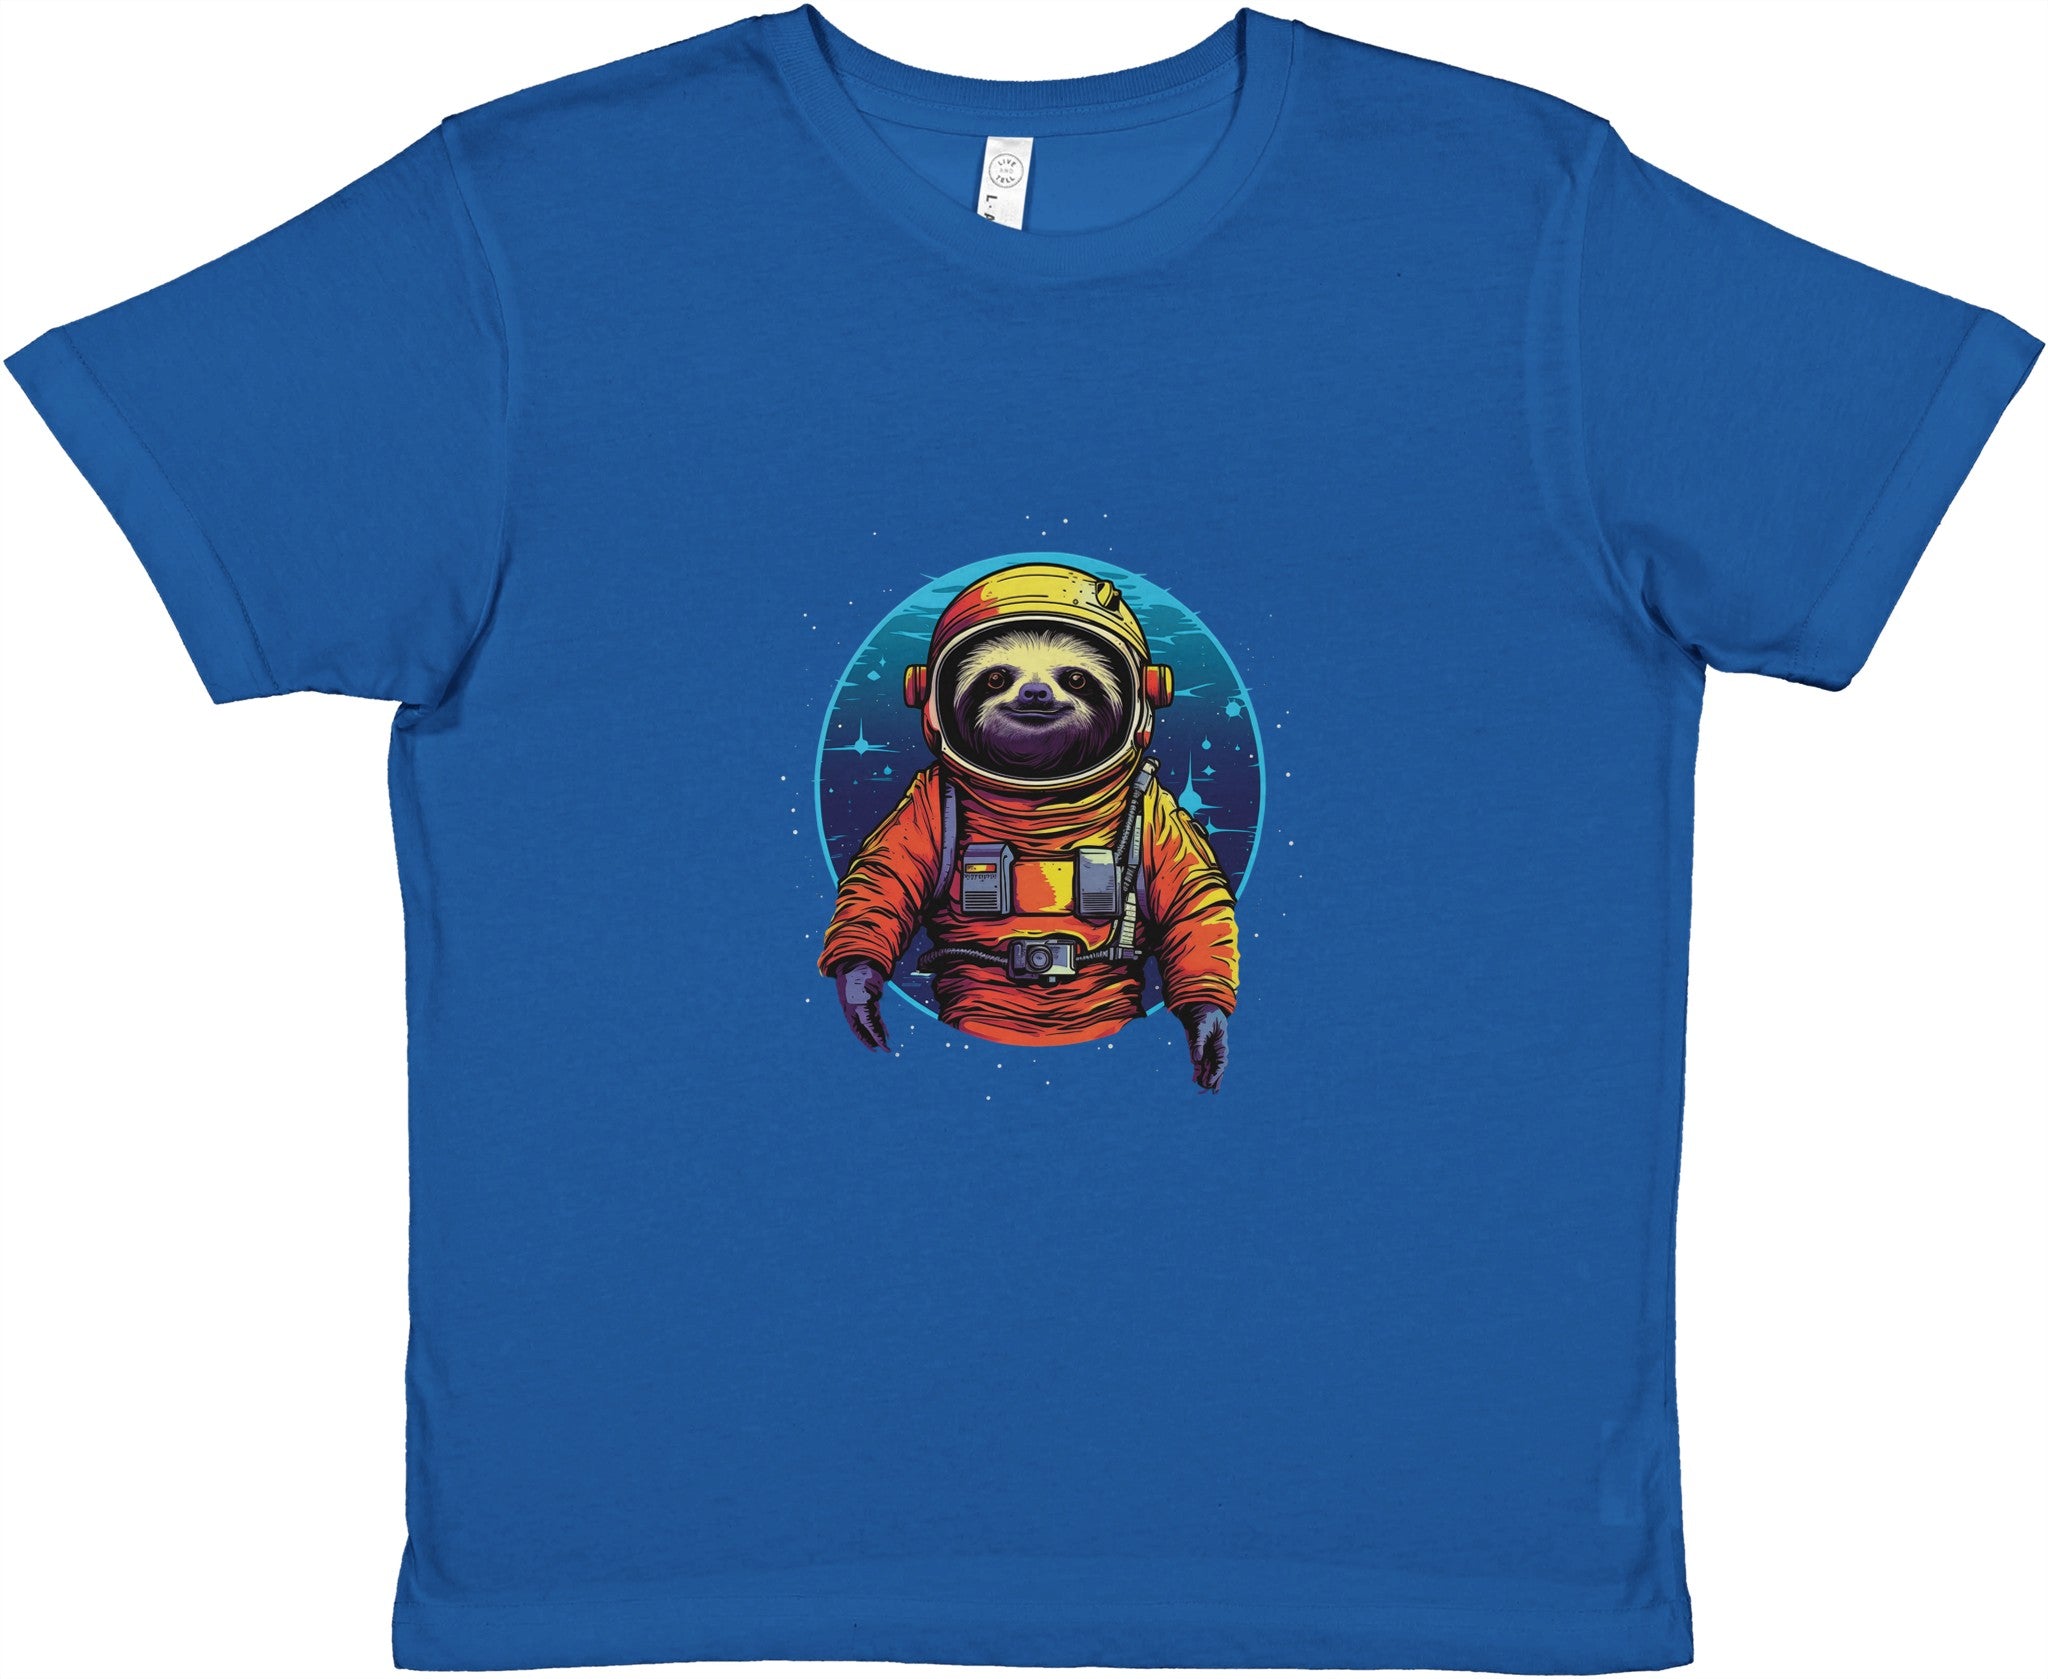 Interstellar Relaxation Kids Crewneck T-shirt - Optimalprint